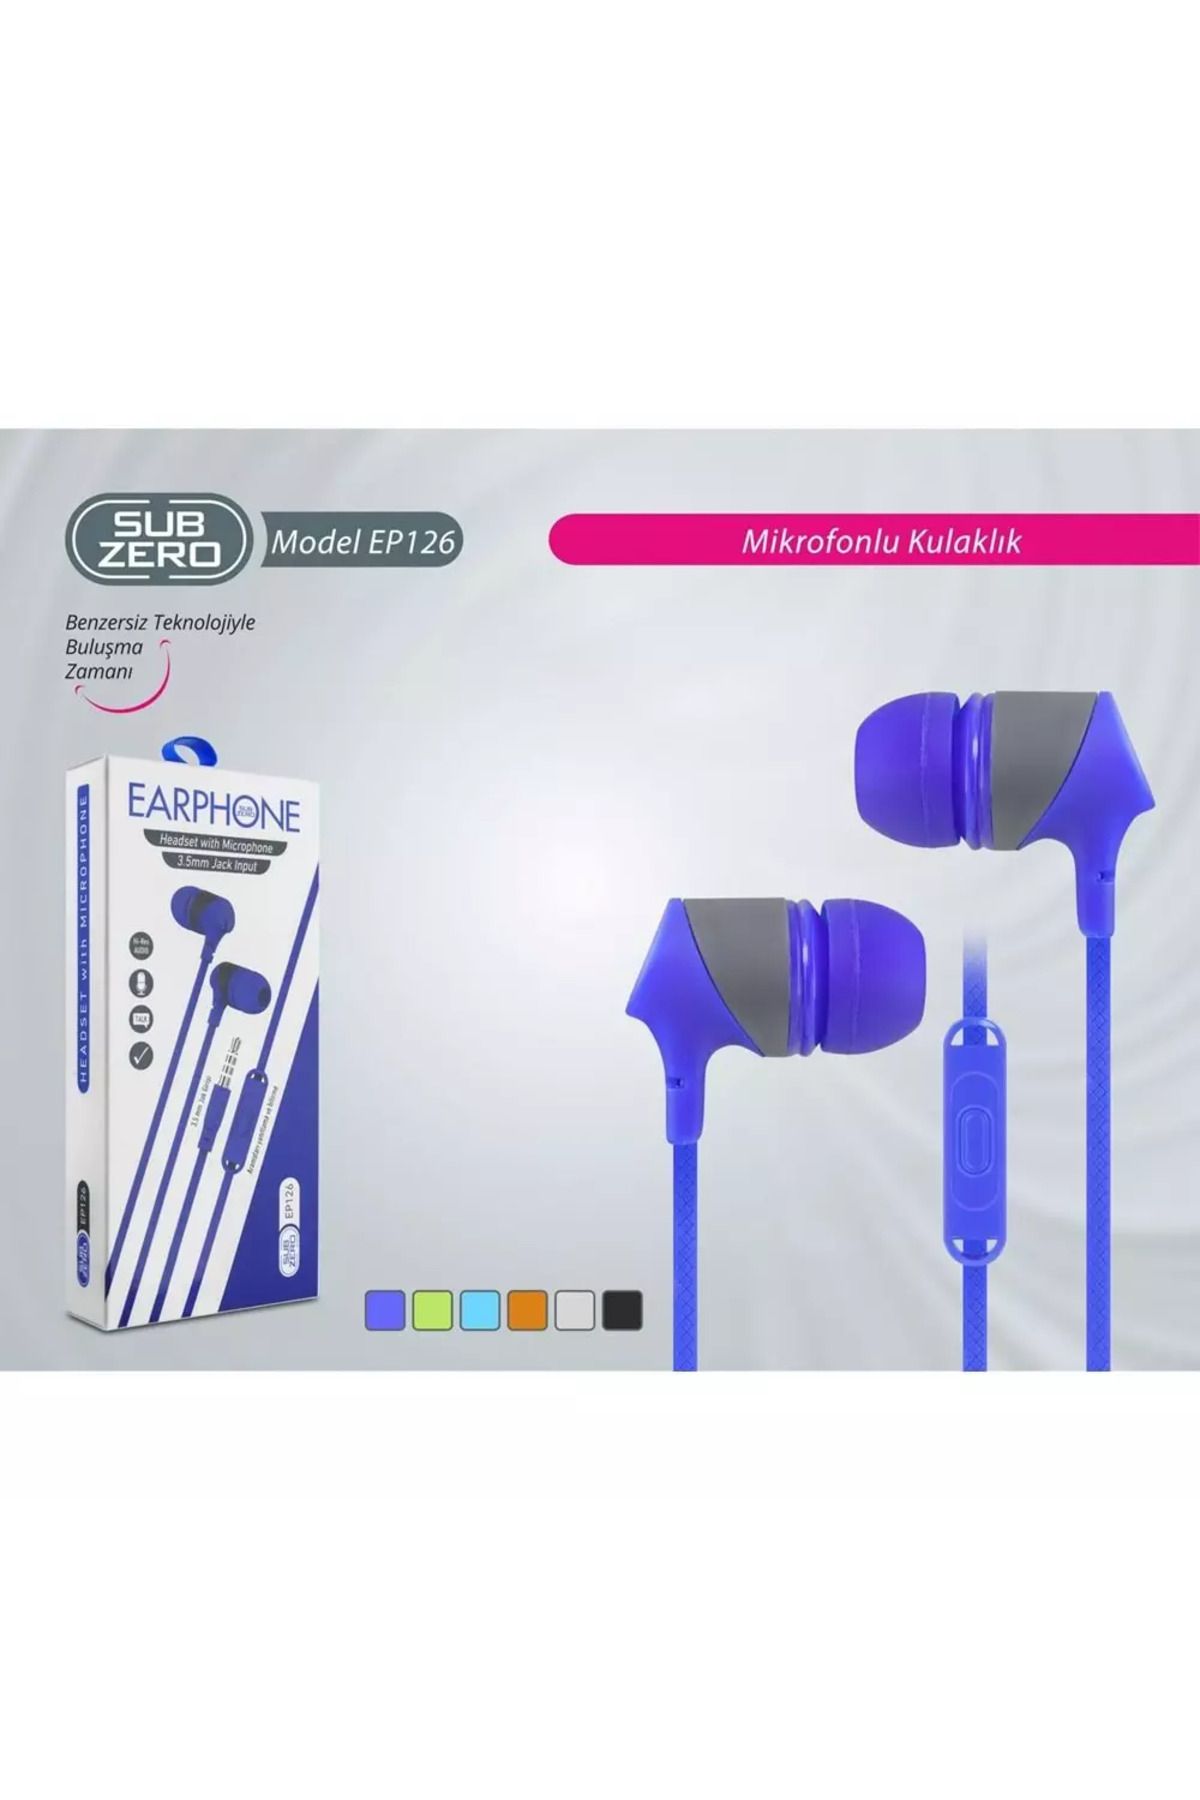 Subzero EP126 Renkli Mikrofonlu Kablolu Kulaklık